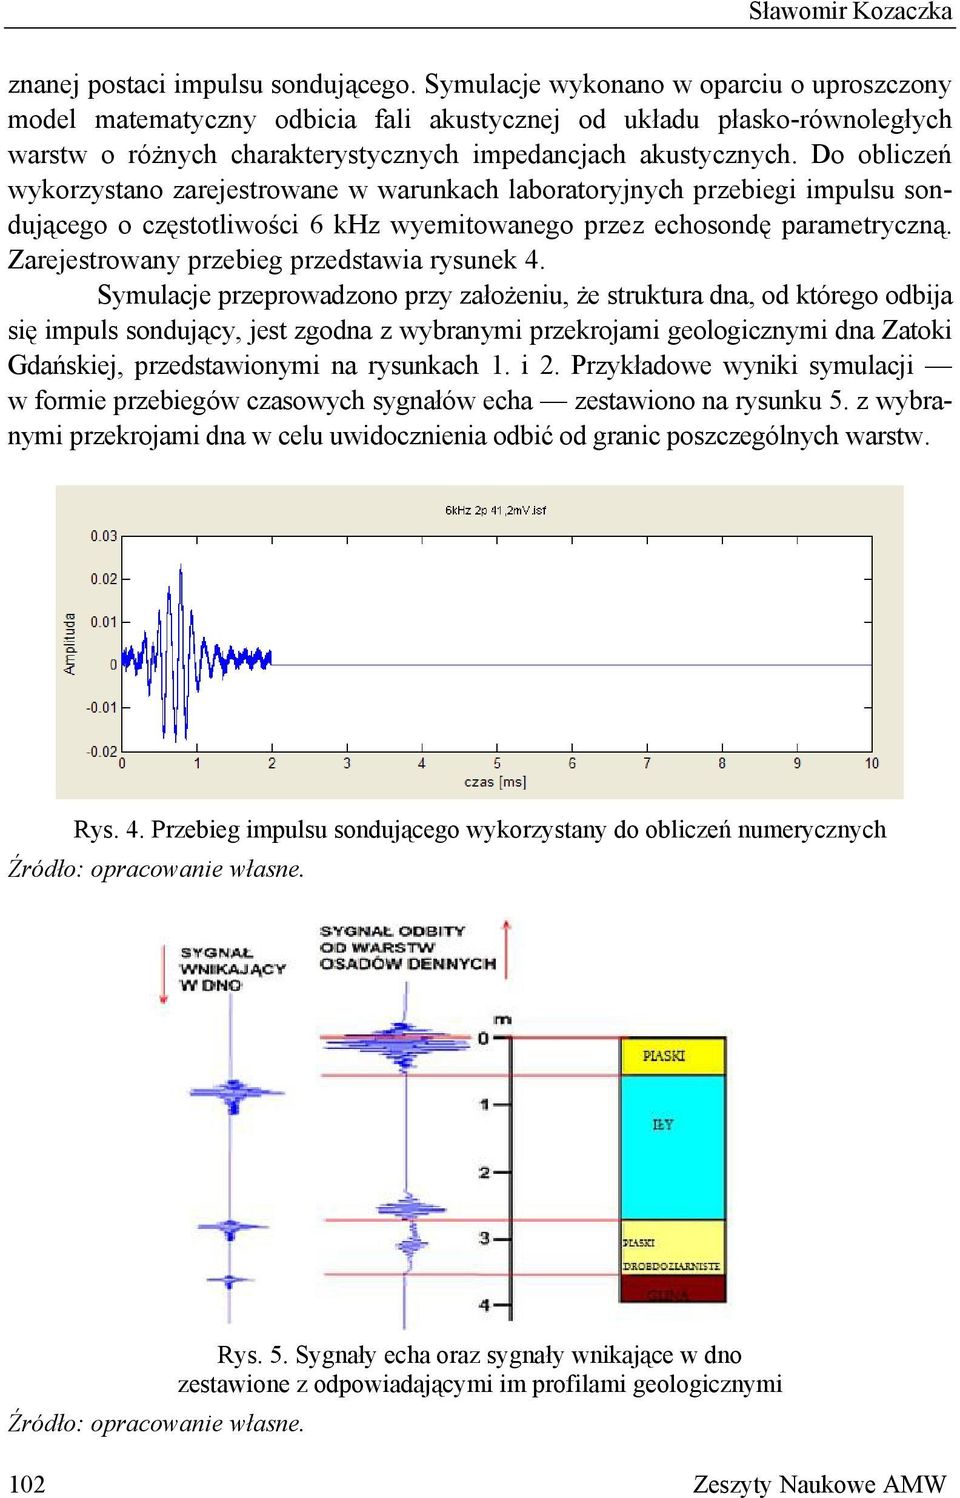 Do obliczeń wykorzystano zarejestrowane w warunkach laboratoryjnych przebiegi impulsu sondującego o częstotliwości 6 khz wyemitowanego przez echosondę parametryczną.